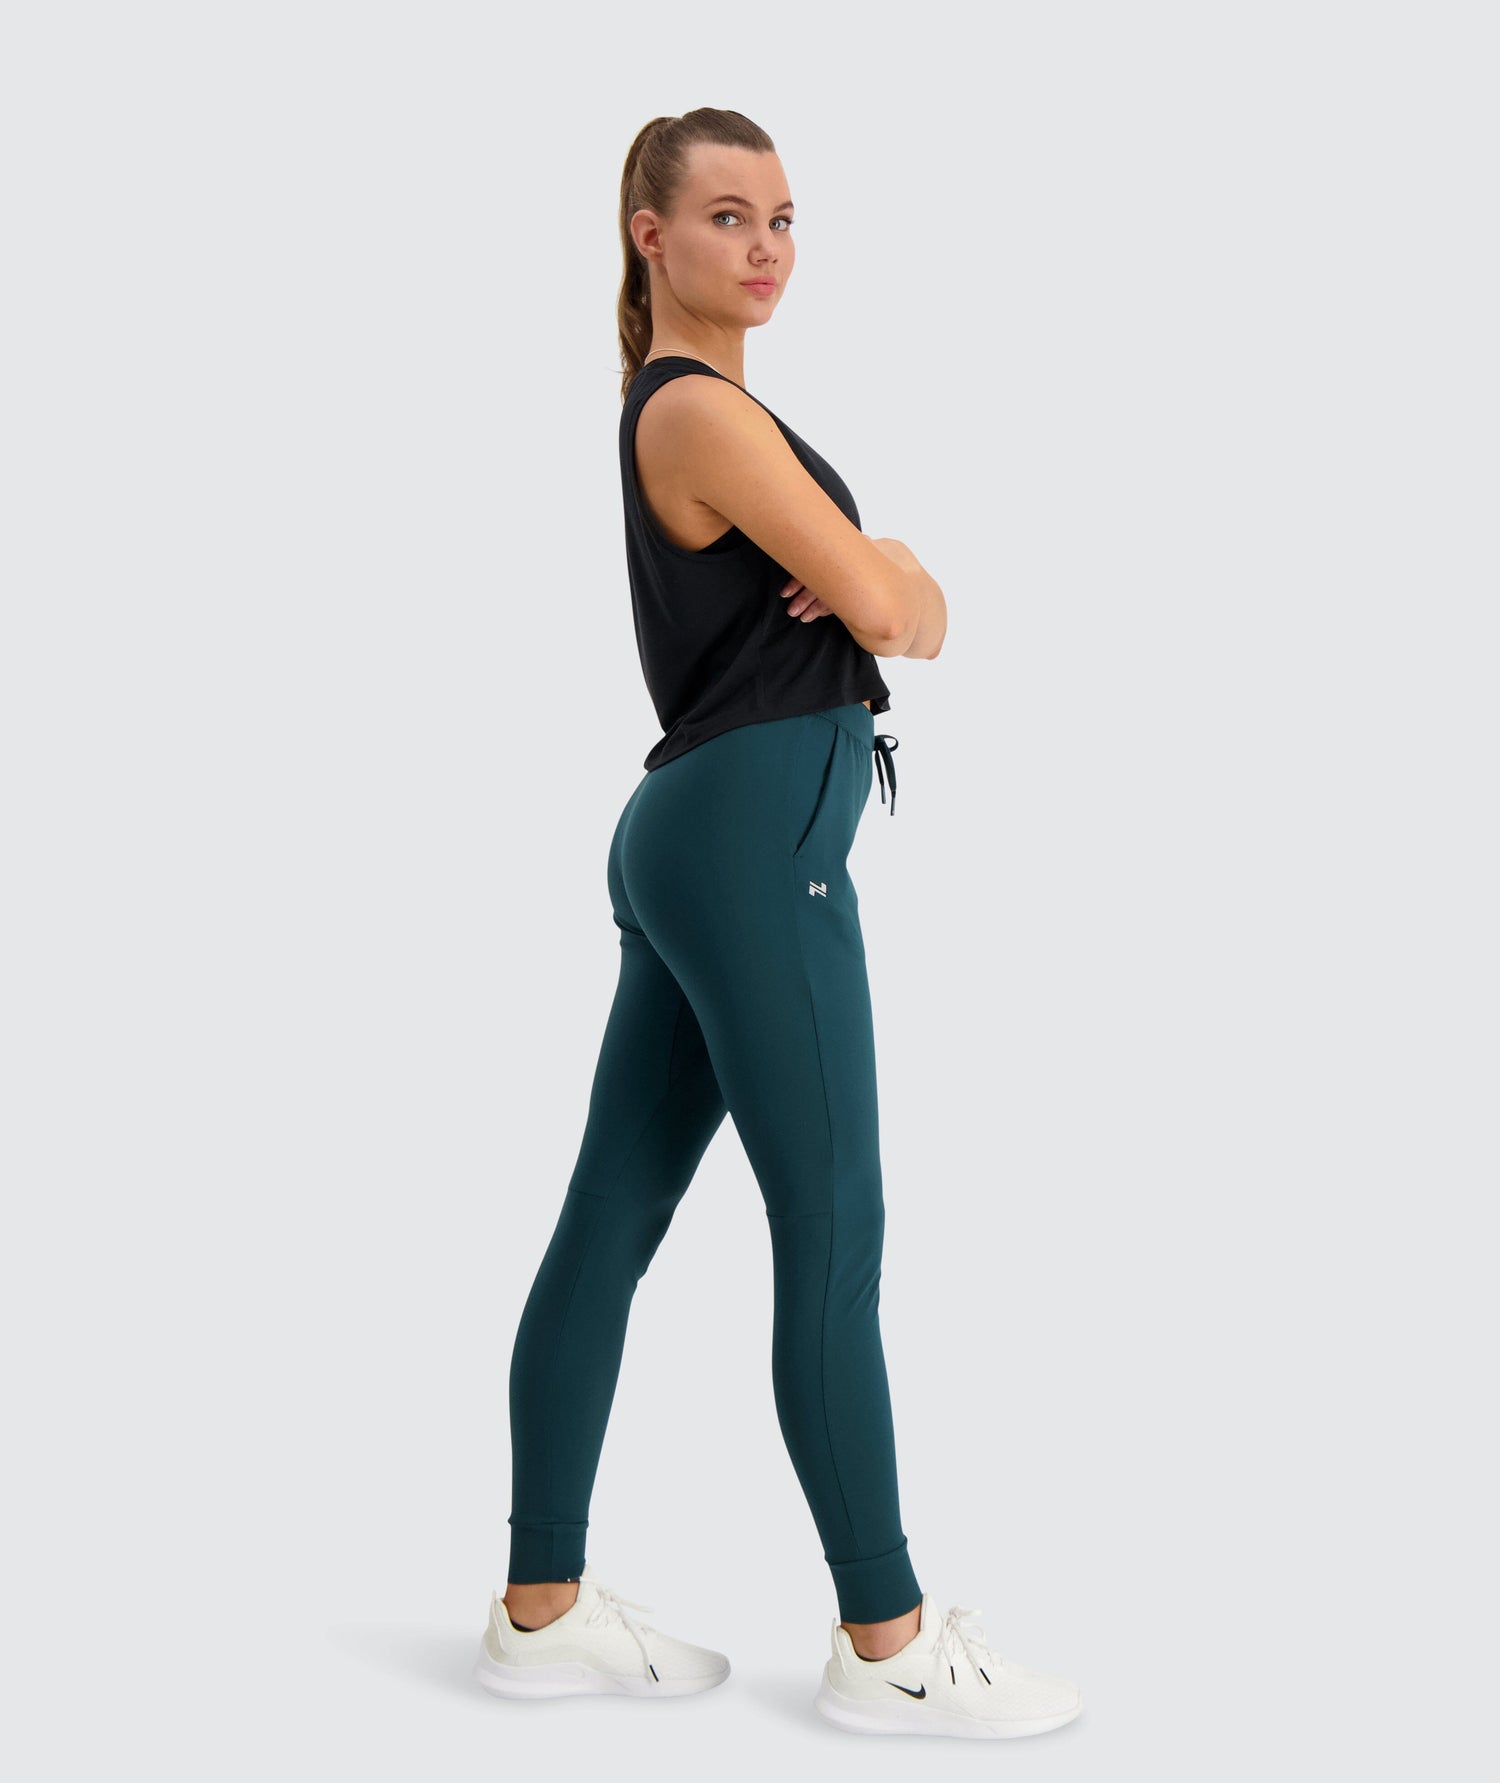 Gymnation - W's Training Joggers - Oeko-Tex Certified Fabric - Weekendbee - sustainable sportswear